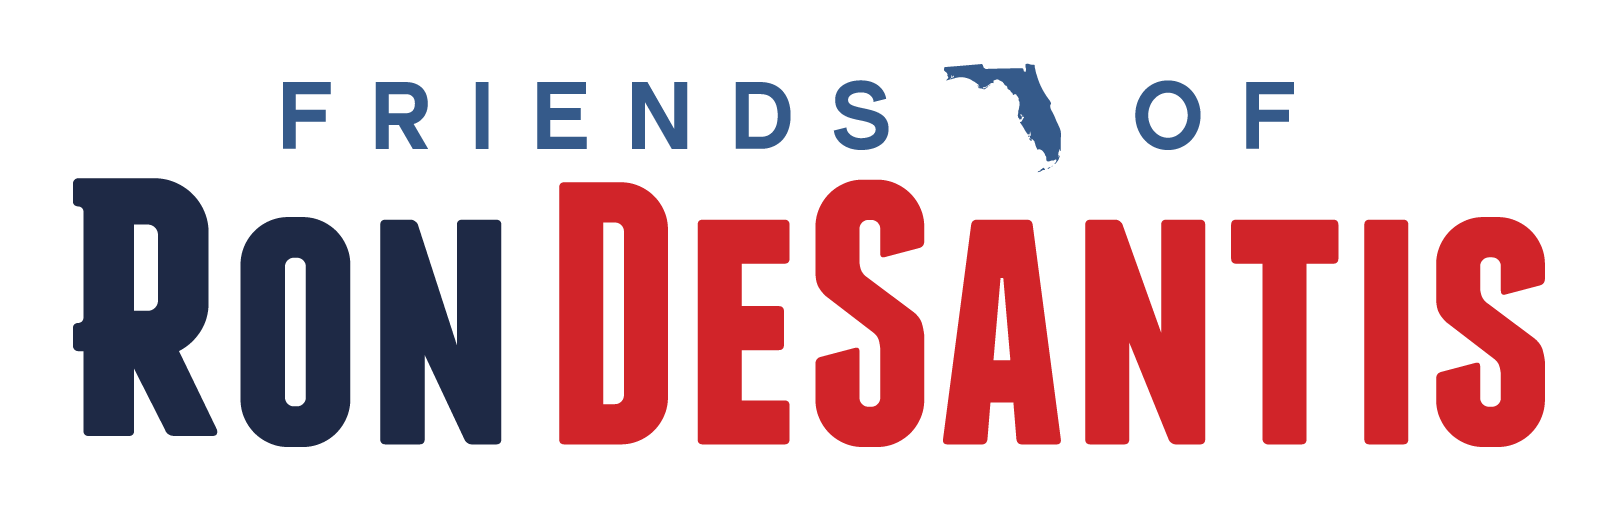 Friends of ron desantis logo lg 01 %281%29